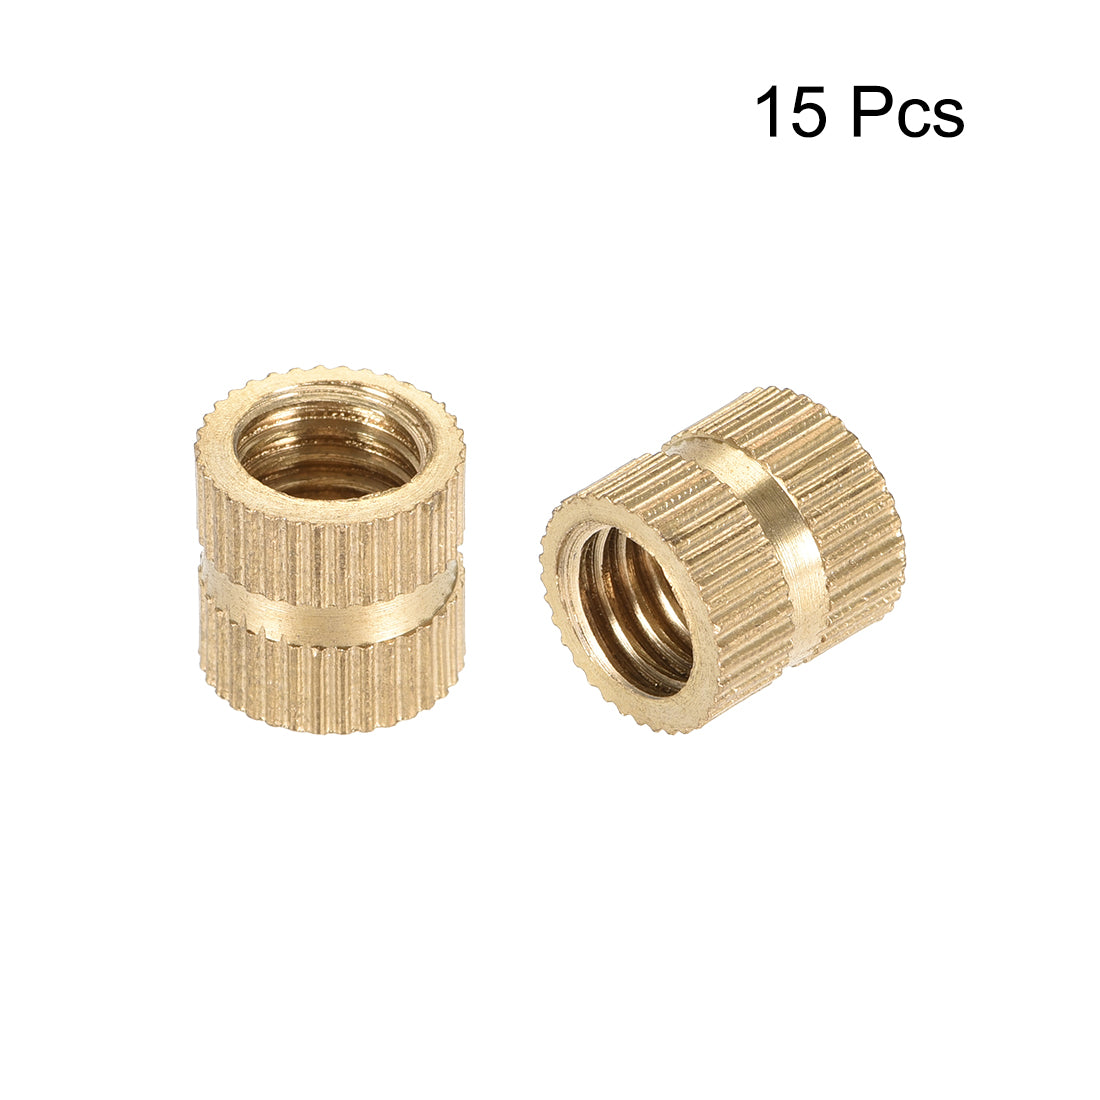 uxcell Uxcell Knurled Insert Nuts, M8 x 10mm(L) x 10mm(OD) Female Thread Brass Embedment Assortment Kit, 15 Pcs